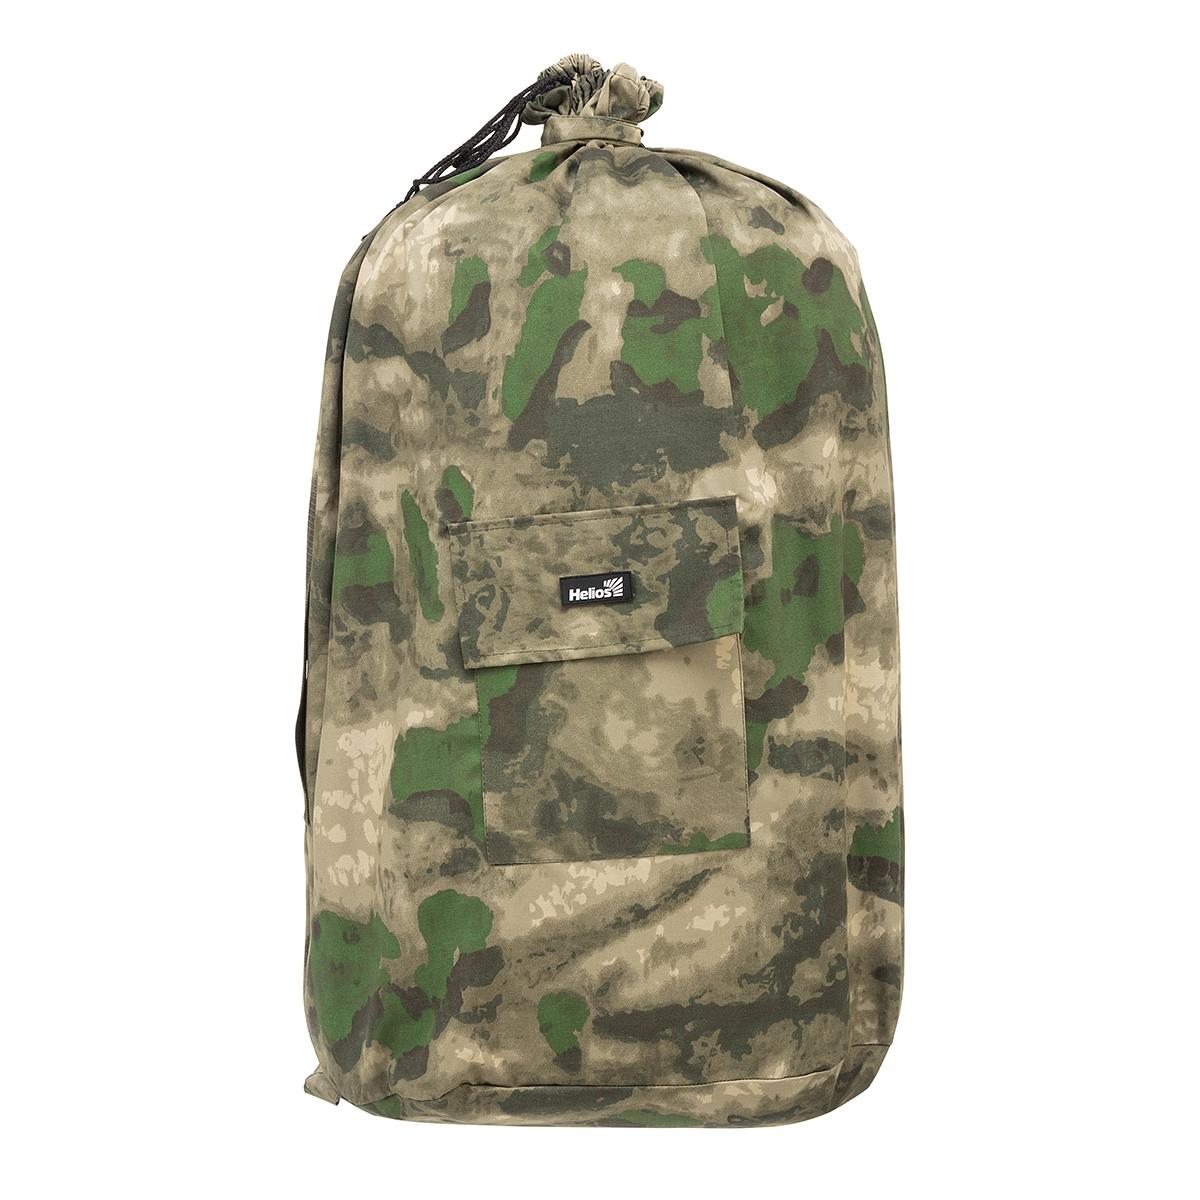 Мешок вещевой солдатский большой, 100л КМФ (палаточная ткань) Helios сумка мешок 2 отдела на молниях 3 наружных кармана длинный ремень коричневый